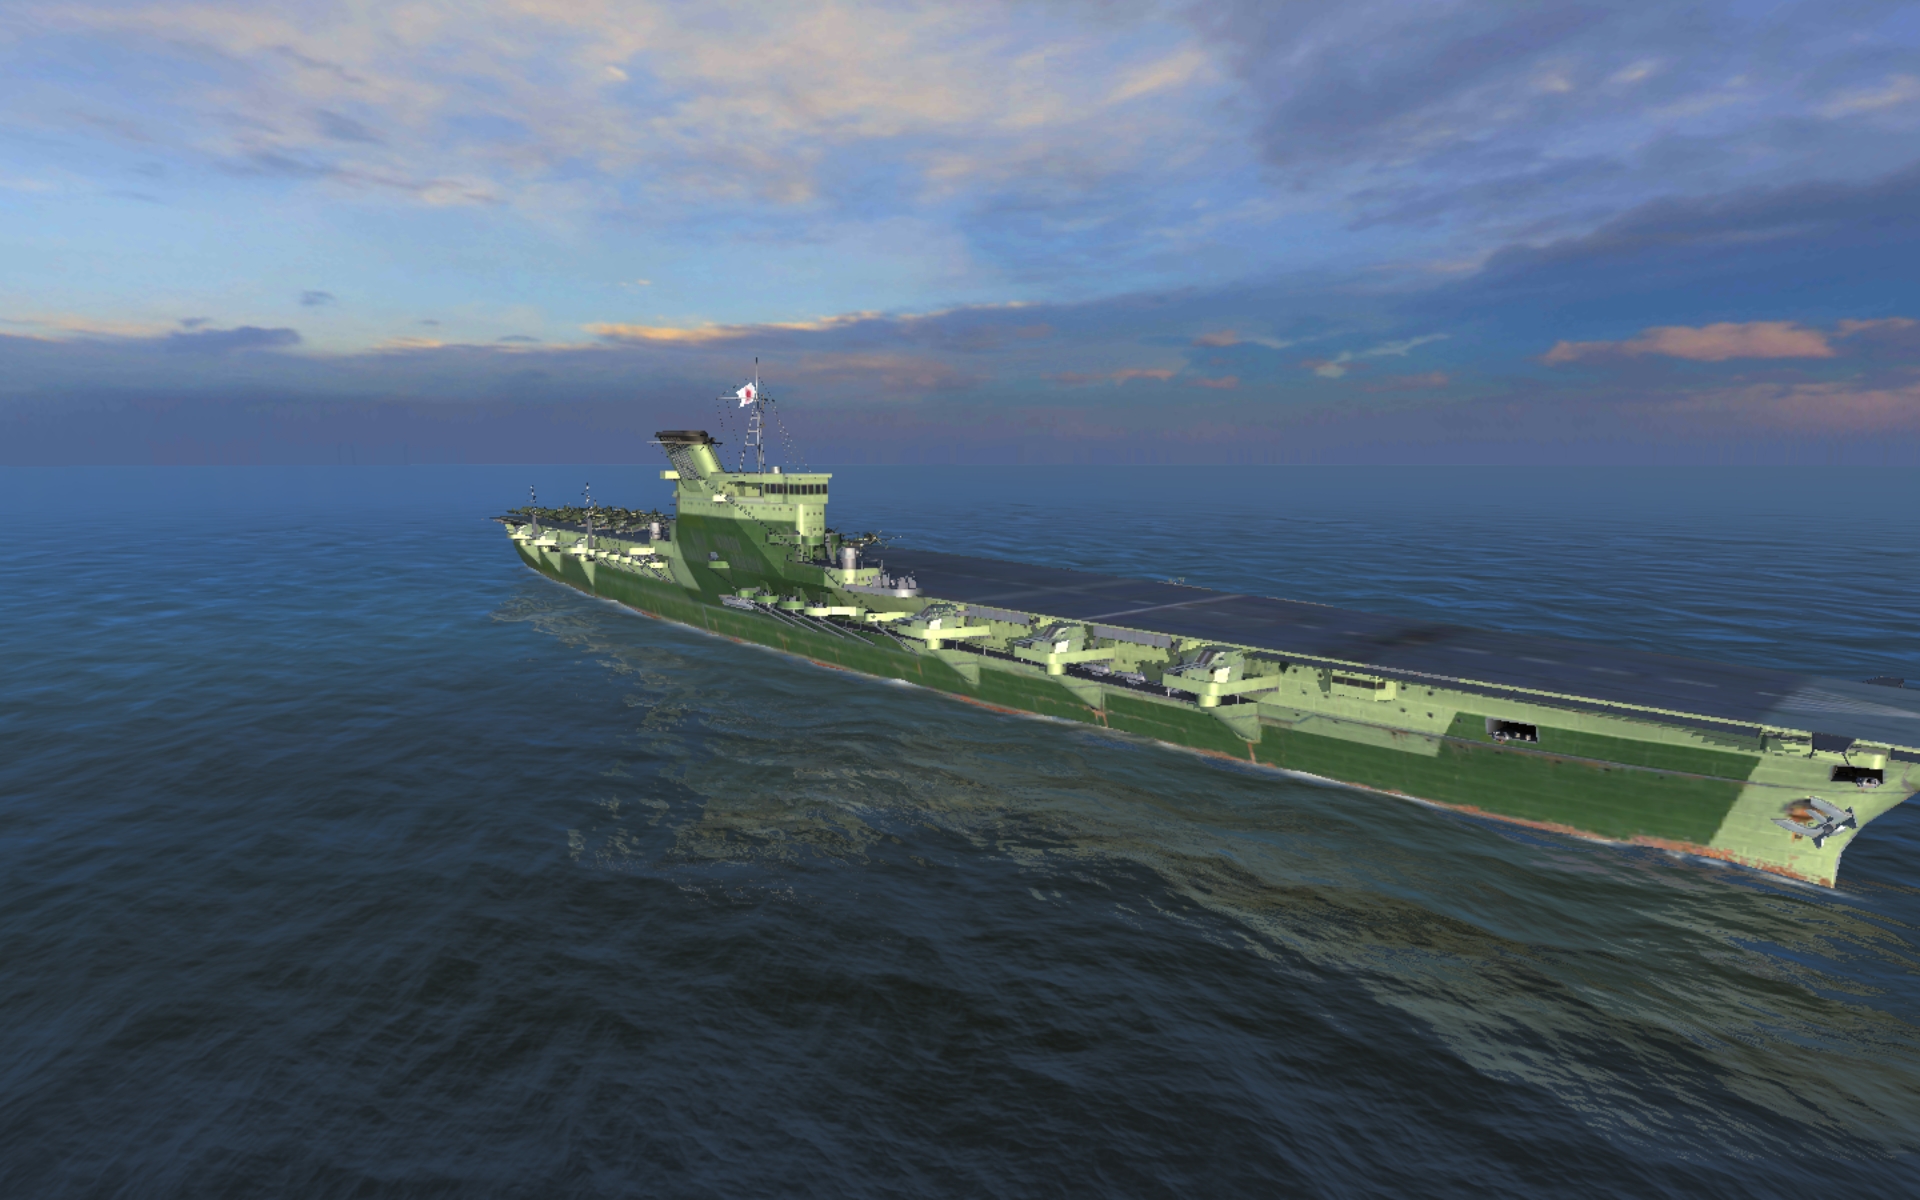 hakuryu fighter gameplay world of warships